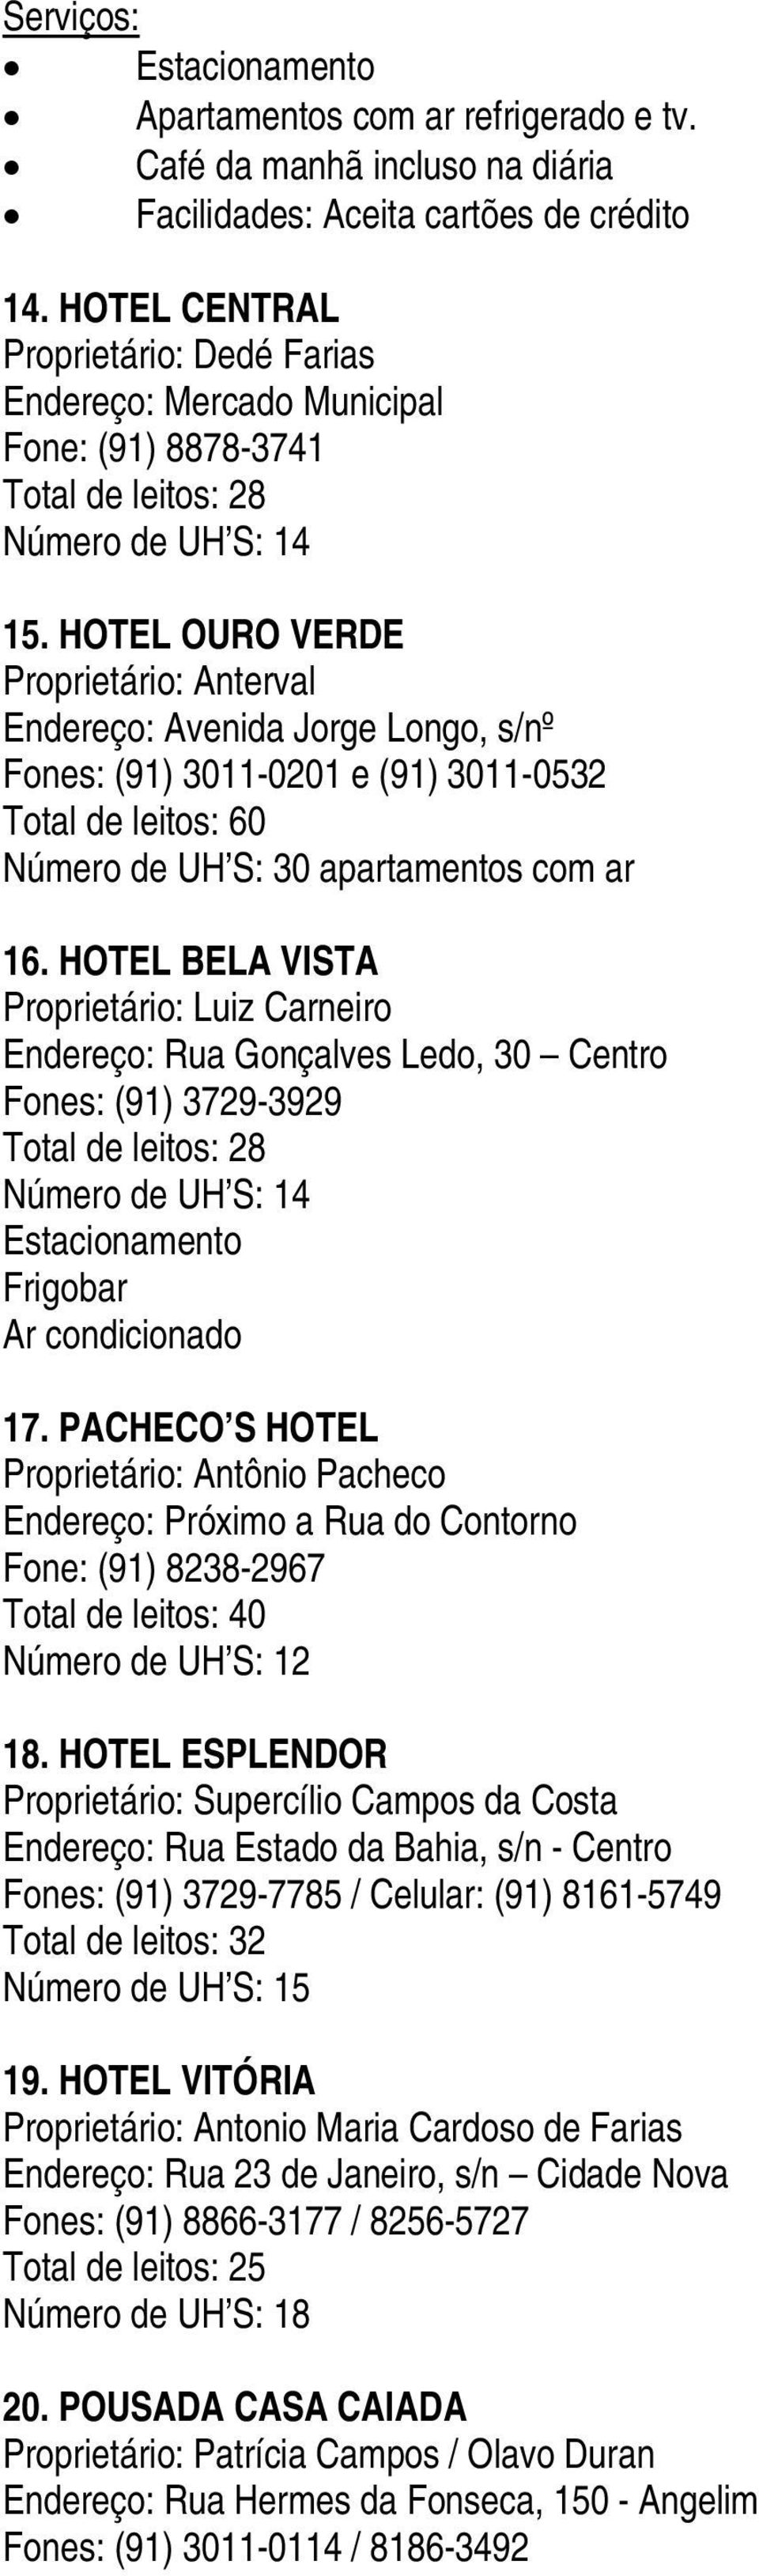 HOTEL OURO VERDE Proprietário: Anterval Endereço: Avenida Jorge Longo, s/nº Fones: (91) 3011-0201 e (91) 3011-0532 Total de leitos: 60 Número de UH S: 30 apartamentos com ar 16.